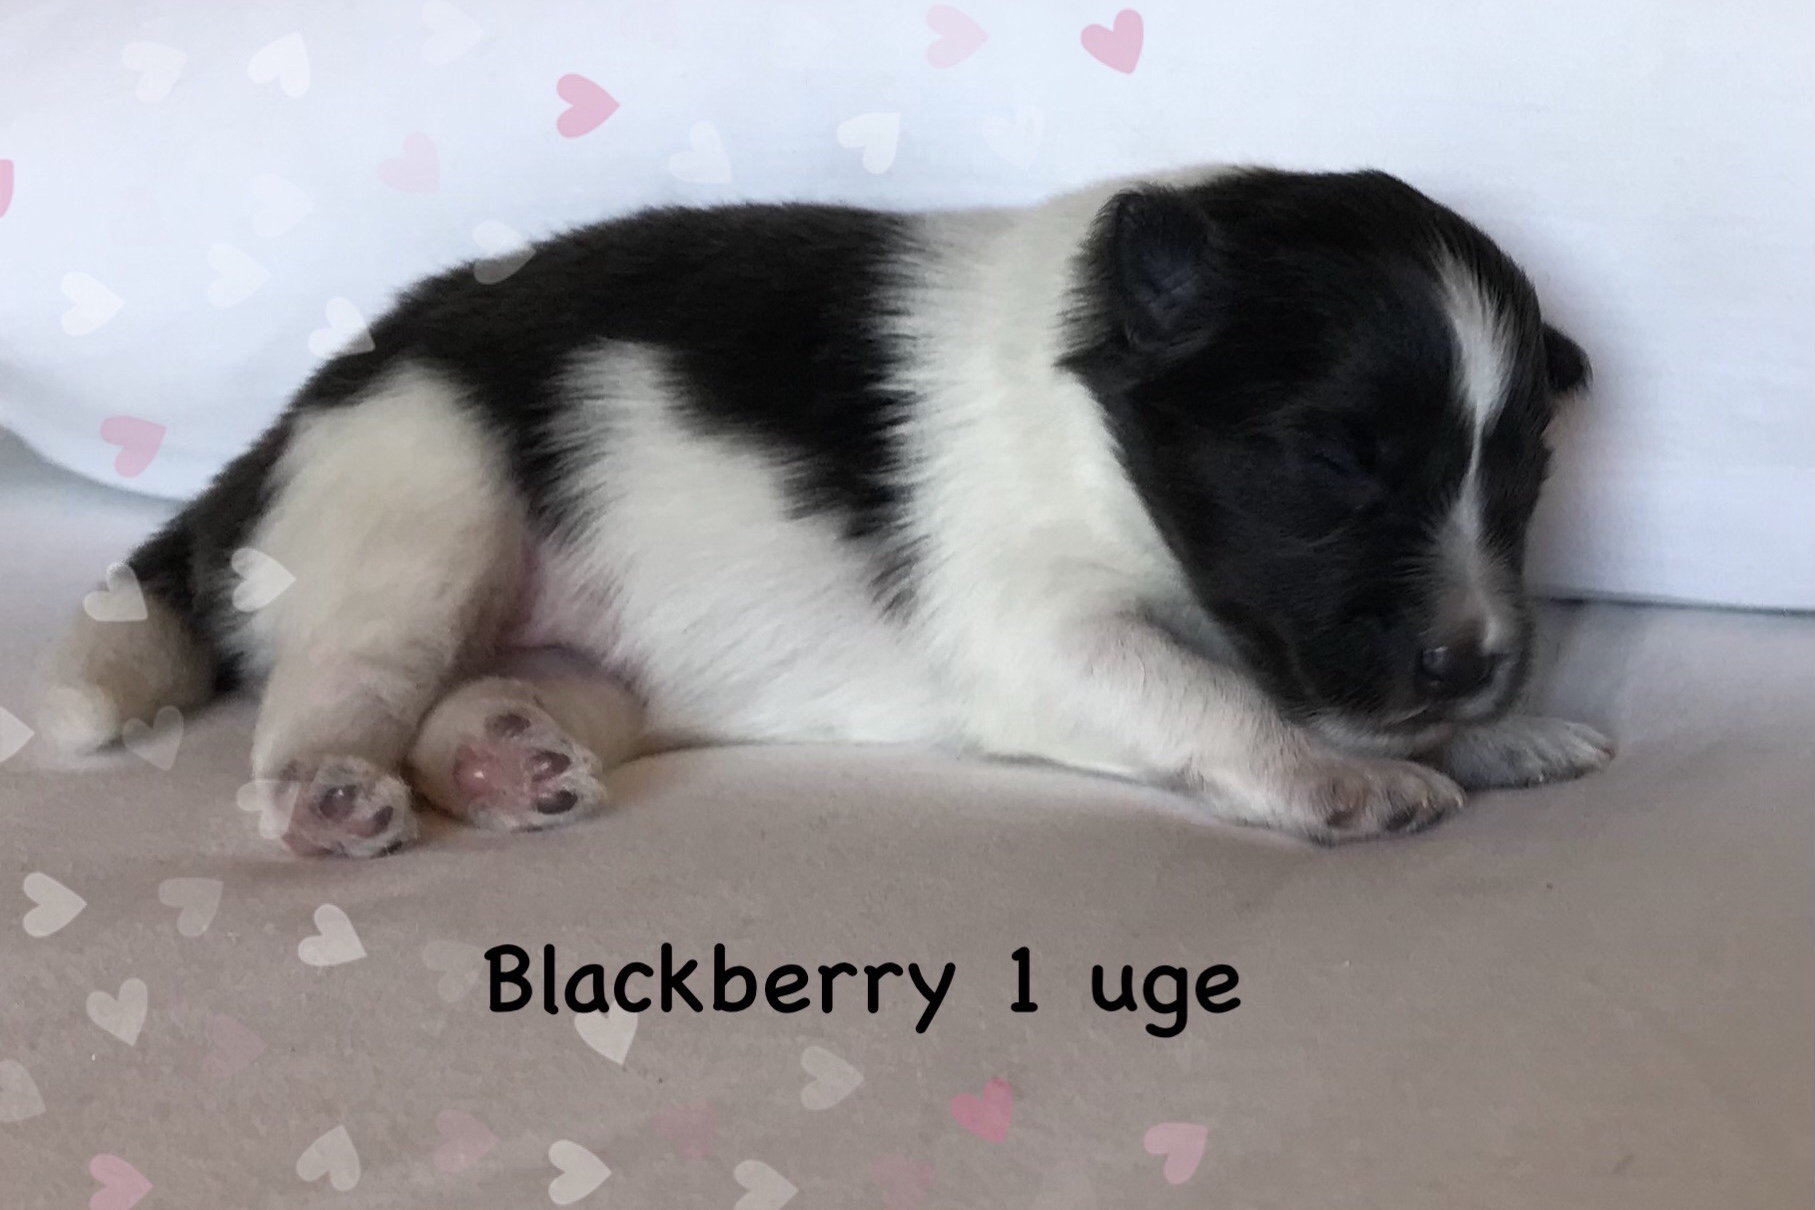 Blackberry har fået sit navn fordi hun er sort/hvid.